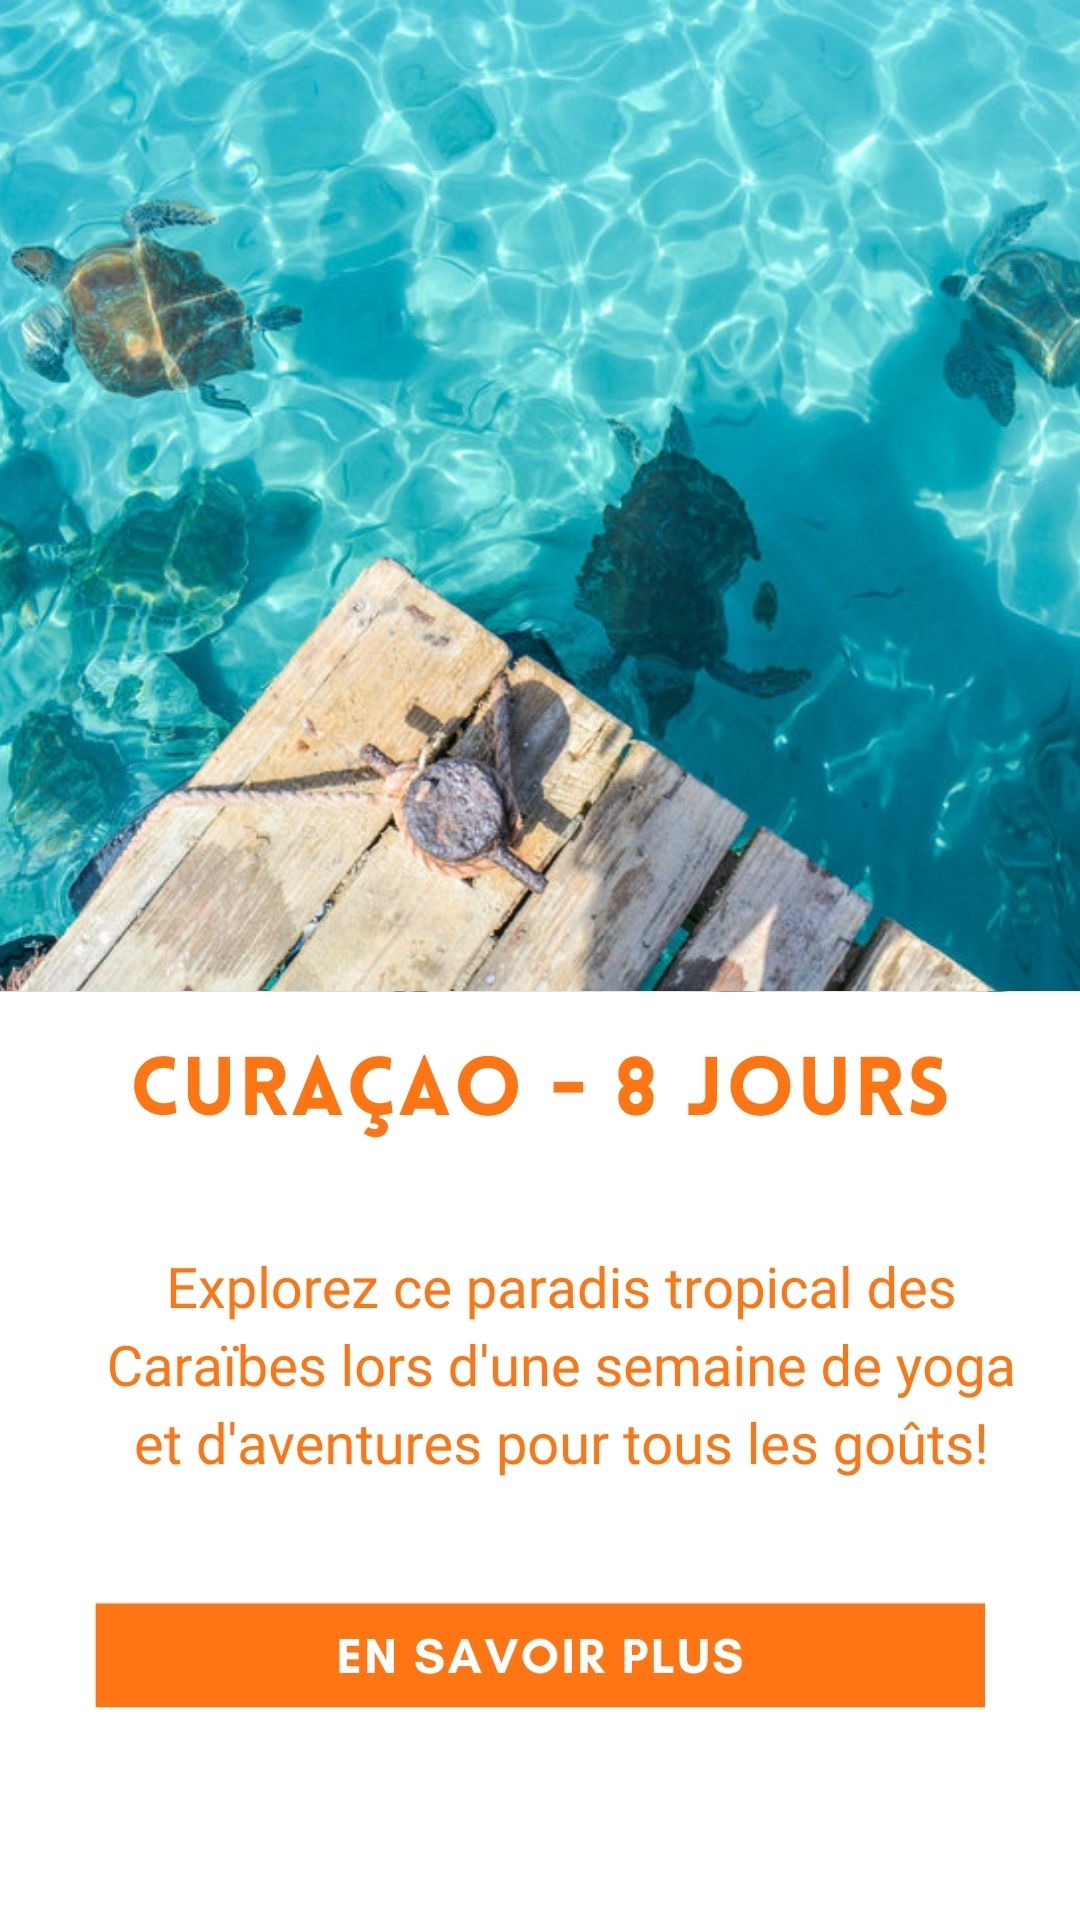 Voyage organisé à Curaçao (retraite de yoga)